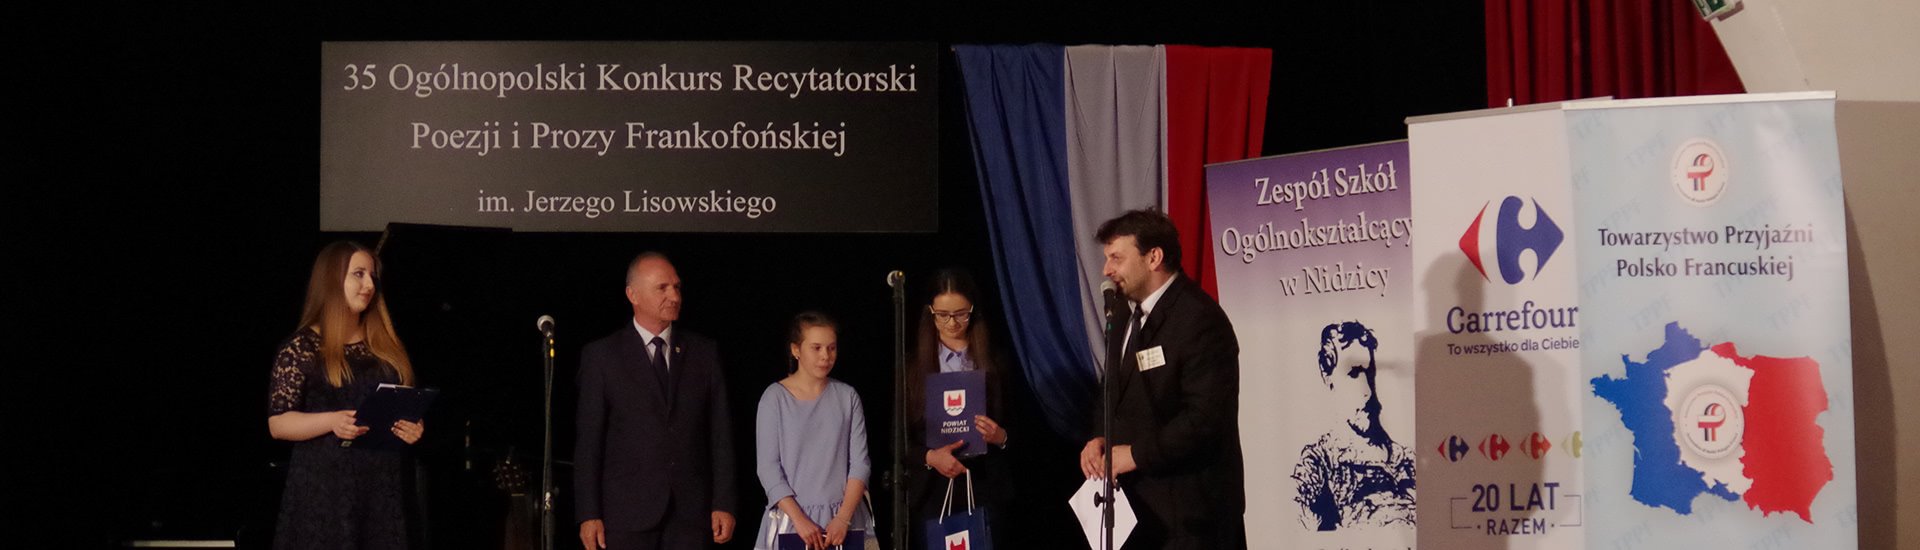 Carrefour Polska sponsorem ogólnopolskiego konkursu recytatorskiego im. Jerzego Lisowskiego